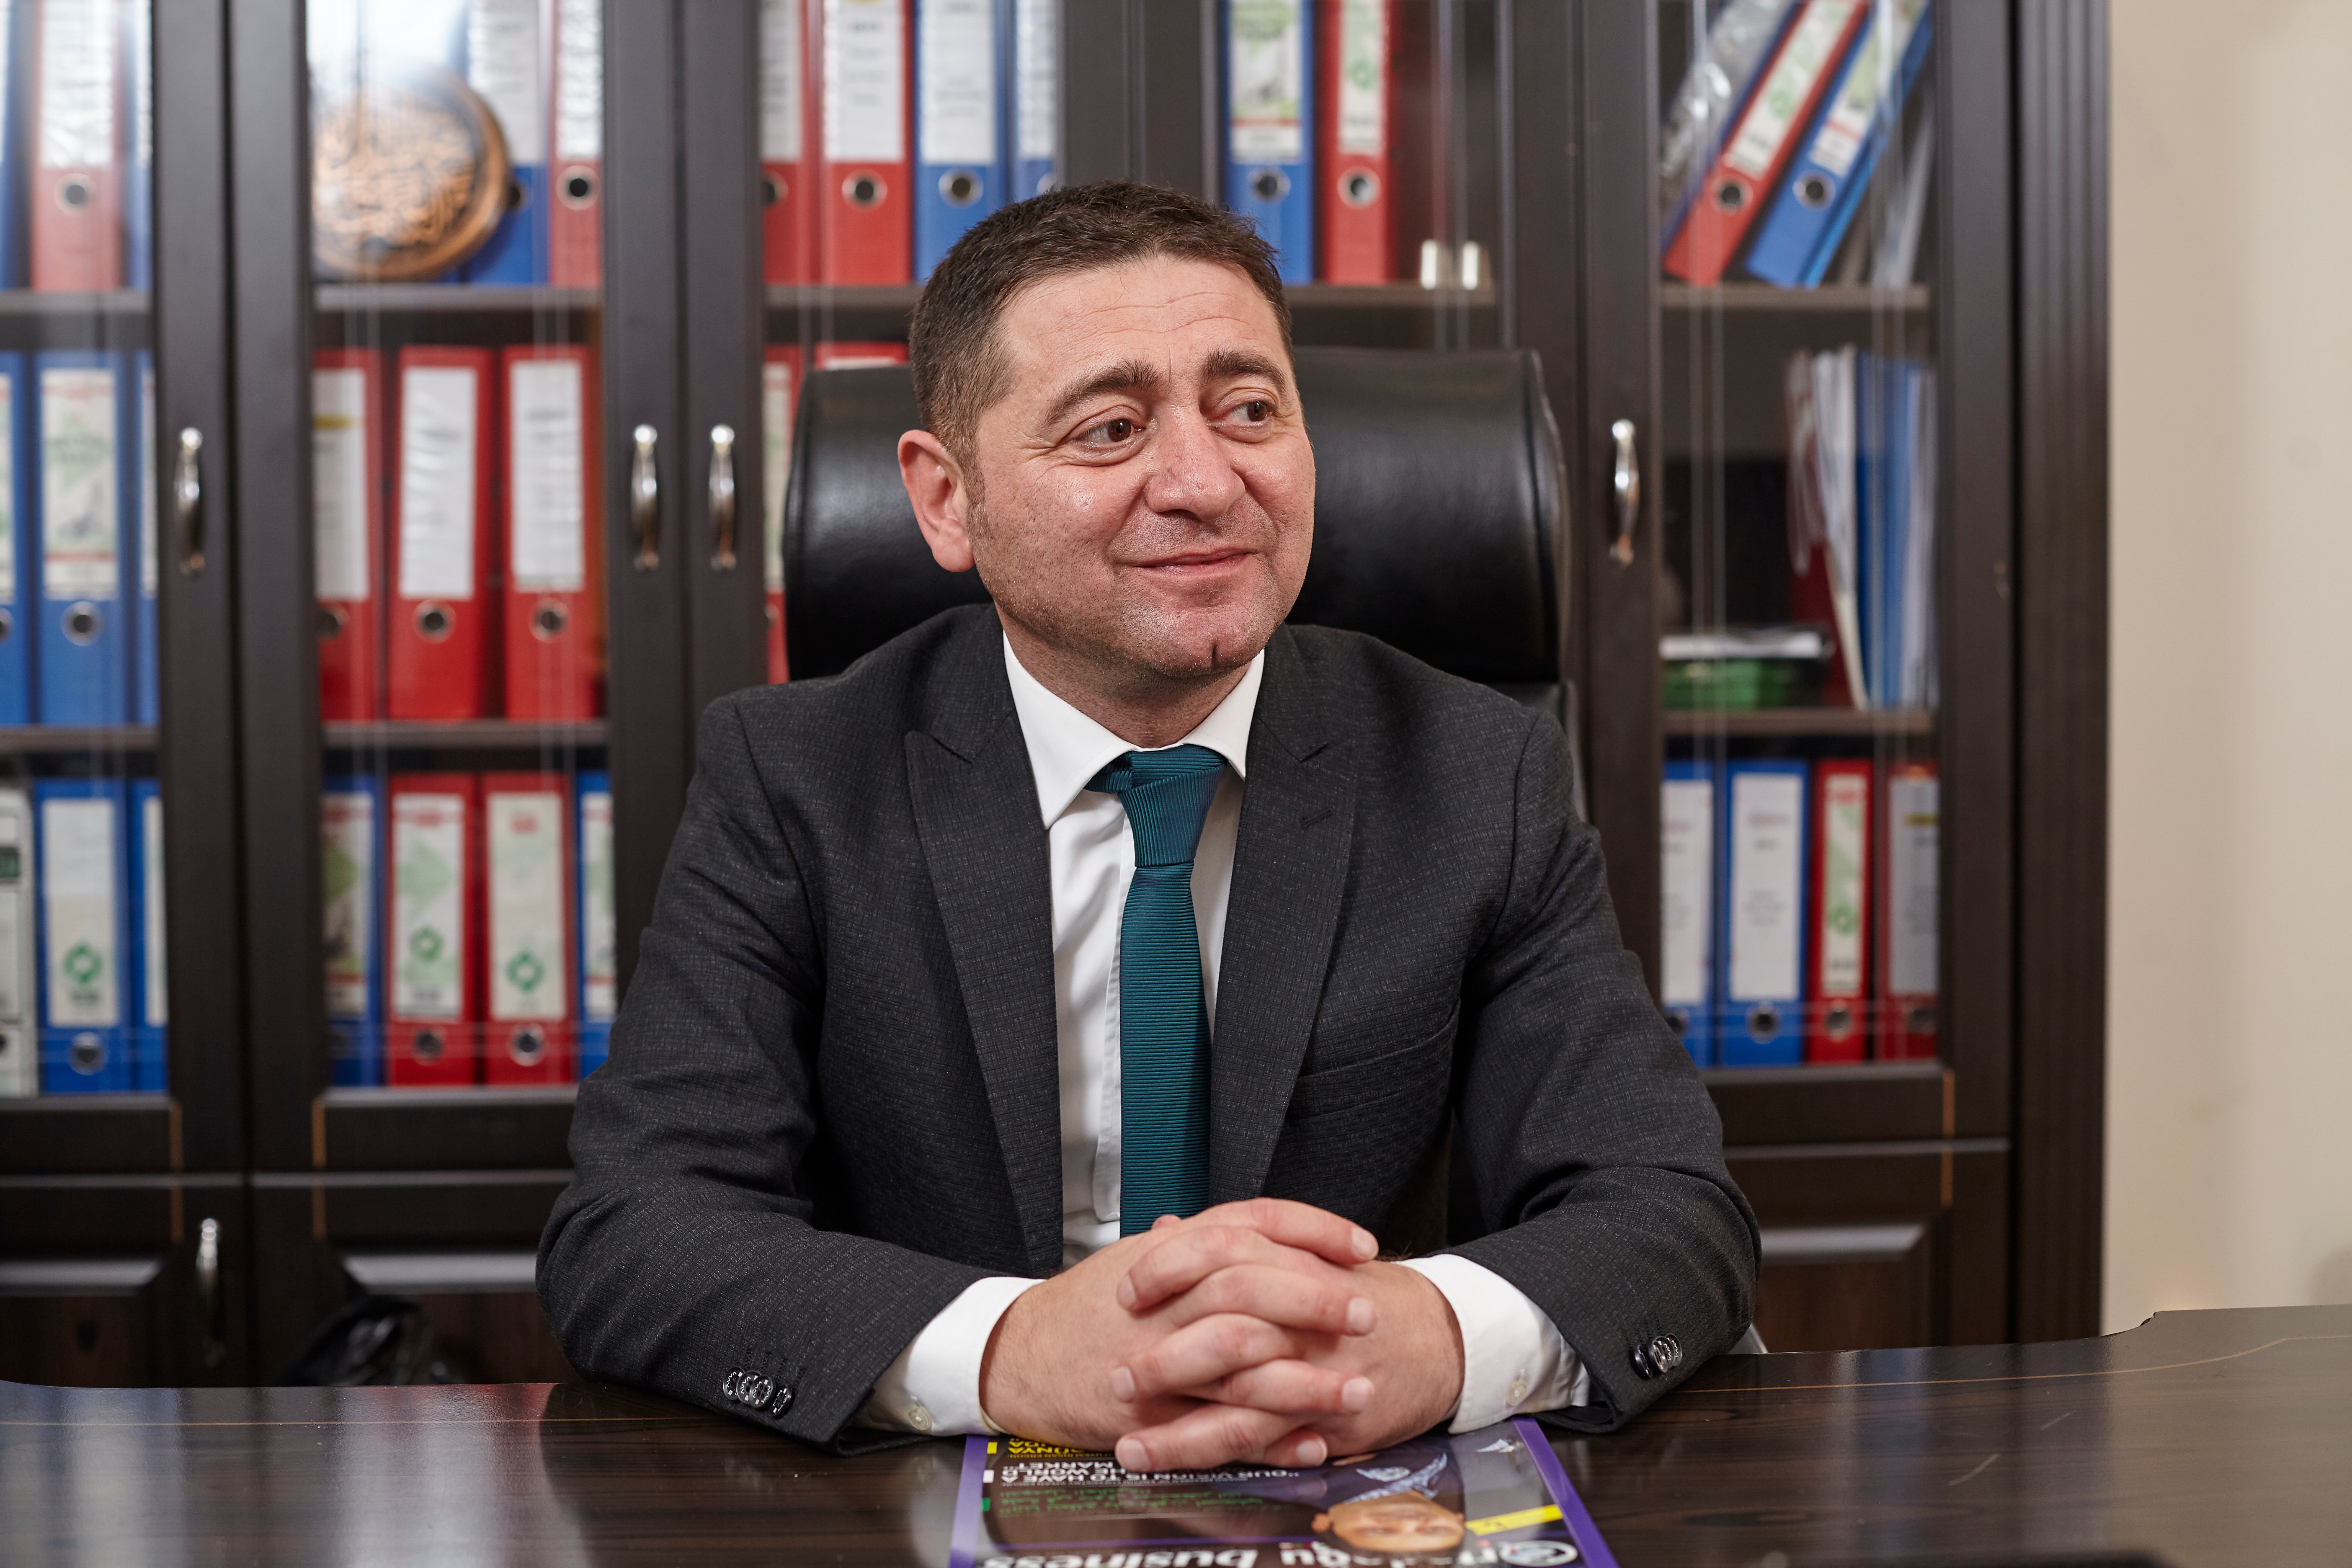  Bükücü Tekstil  Yönetim Kurulu Başkanı Erkan Bükücü